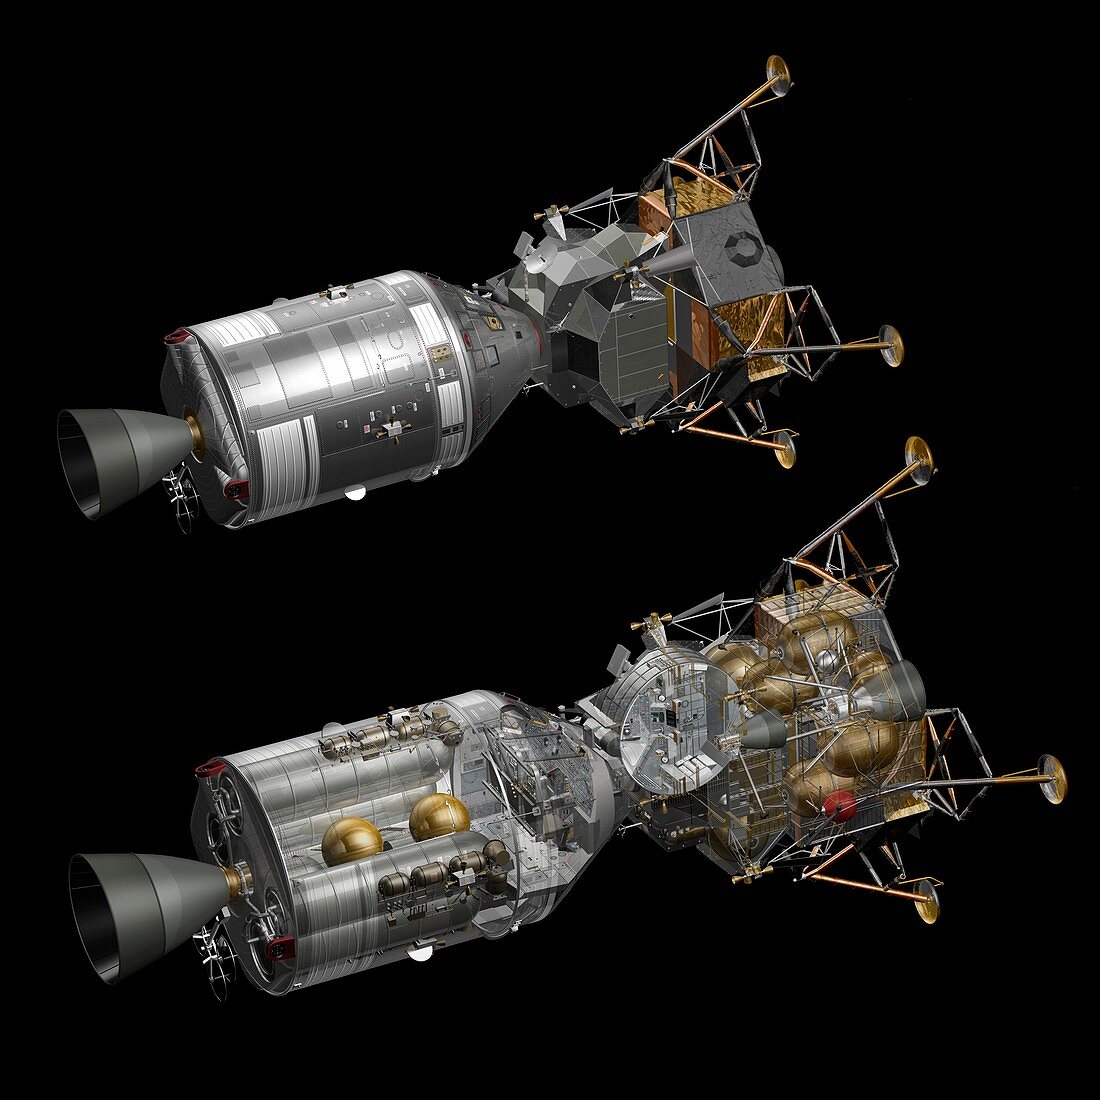 Apollo LM and CSM spacecraft, illustration